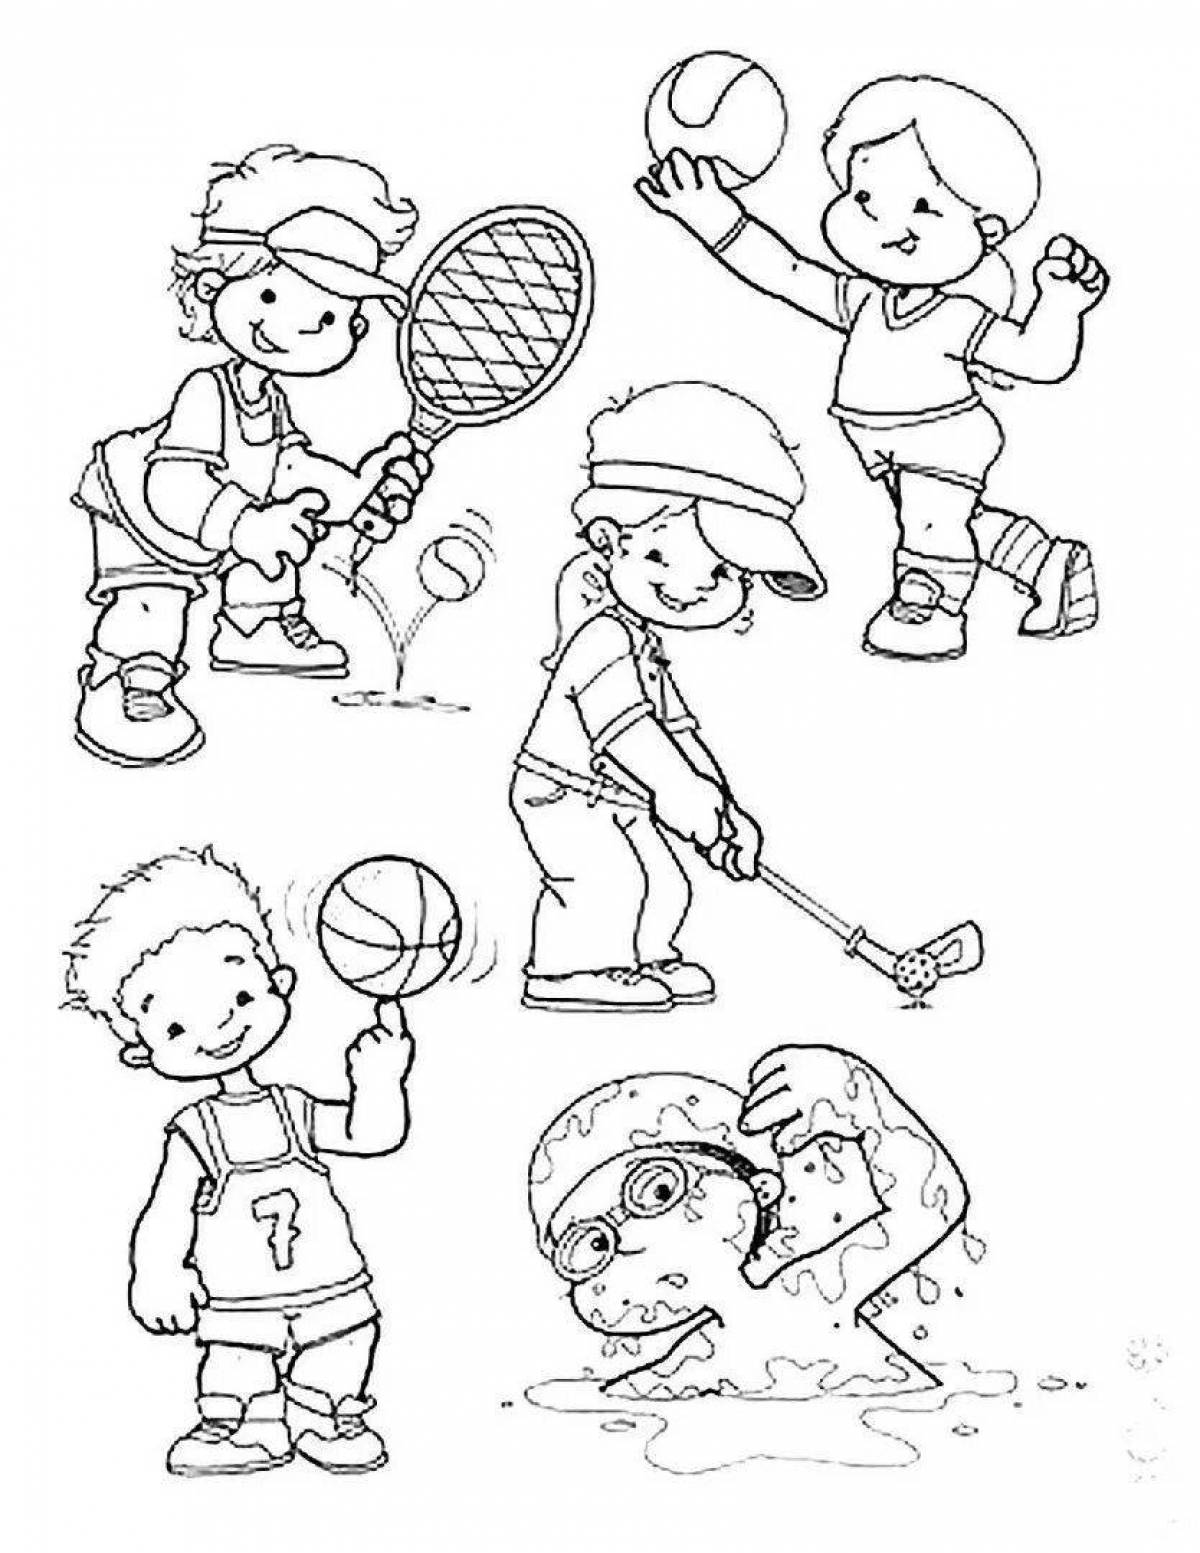 Fun healthy preschool coloring page